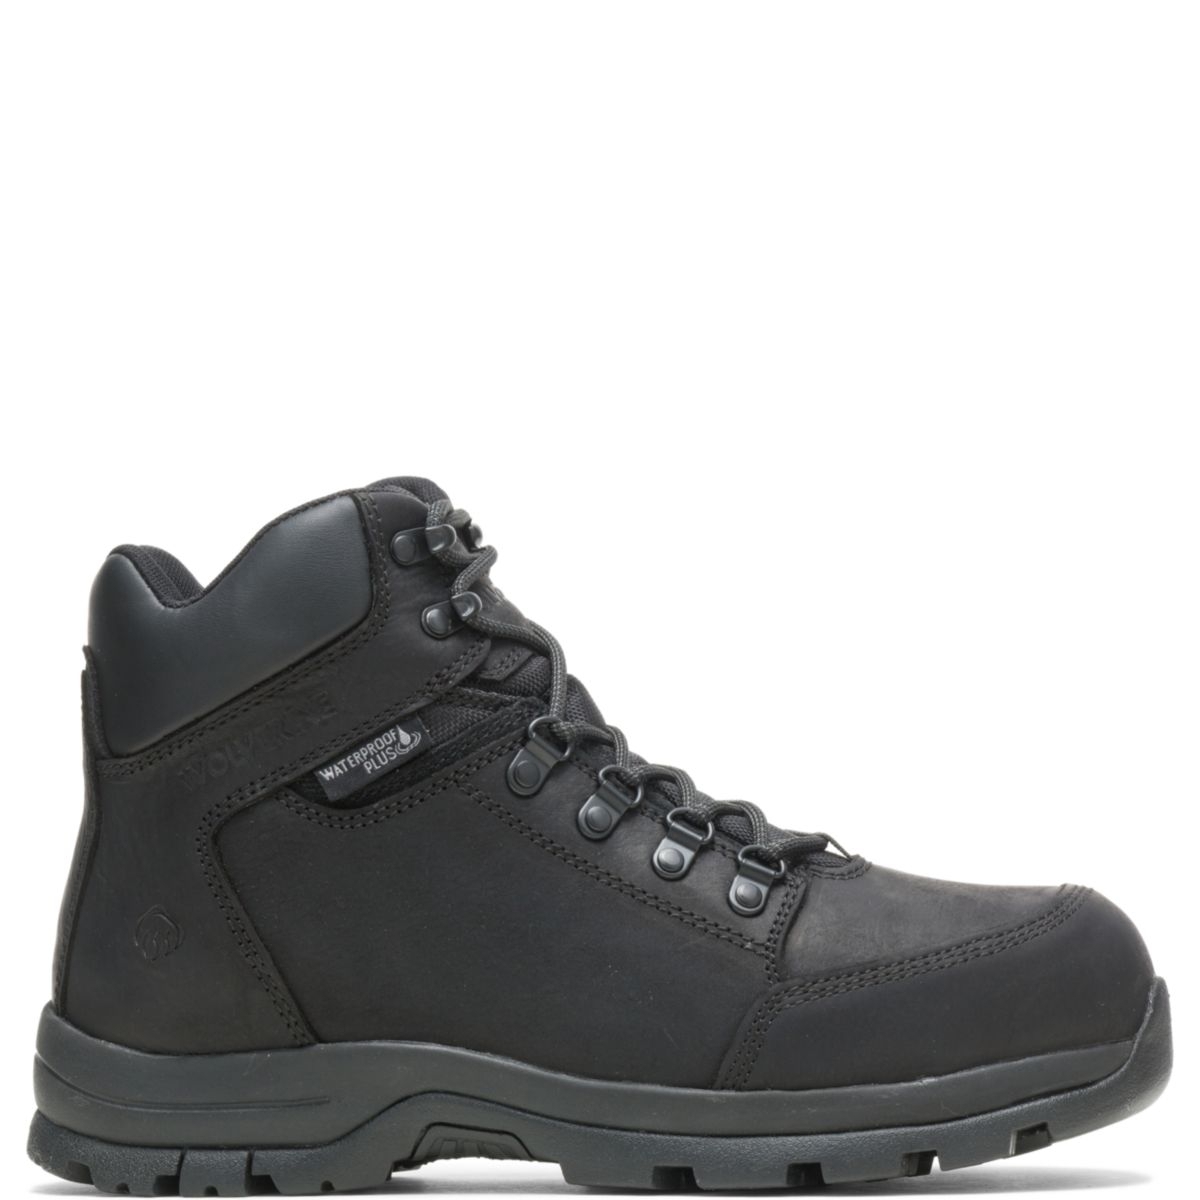 WOLVERINE Men's Grayson Steel Toe Waterproof Work Boot Black - W211042 BLACK - BLACK, 9 X-Wide